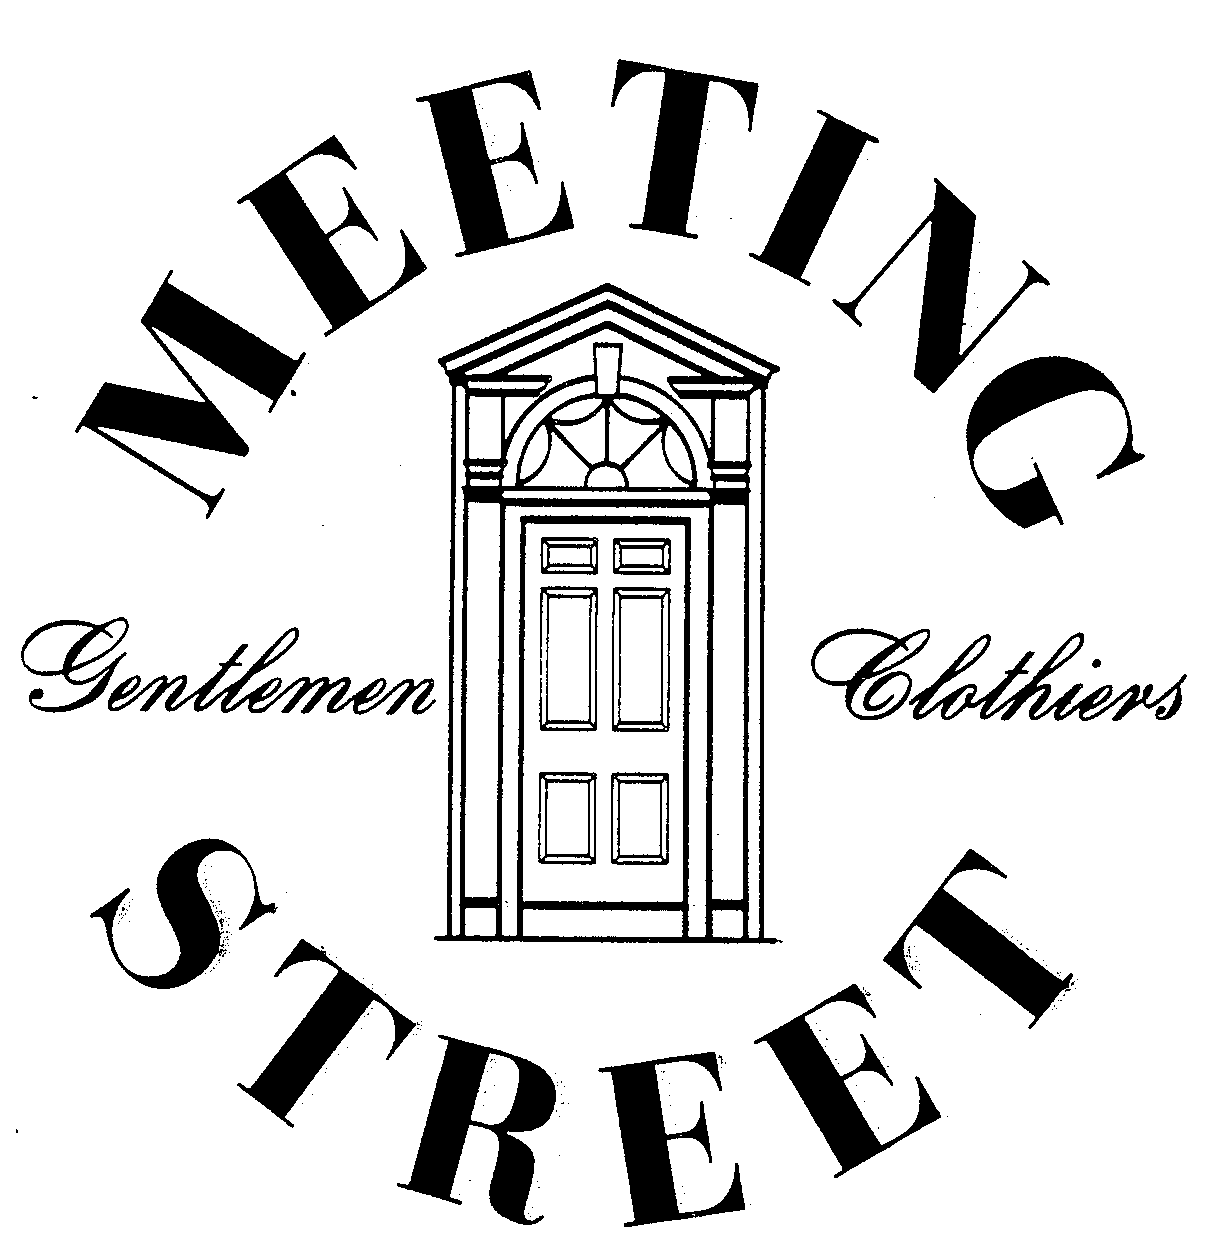  MEETING STREET GENTLEMEN CLOTHIERS